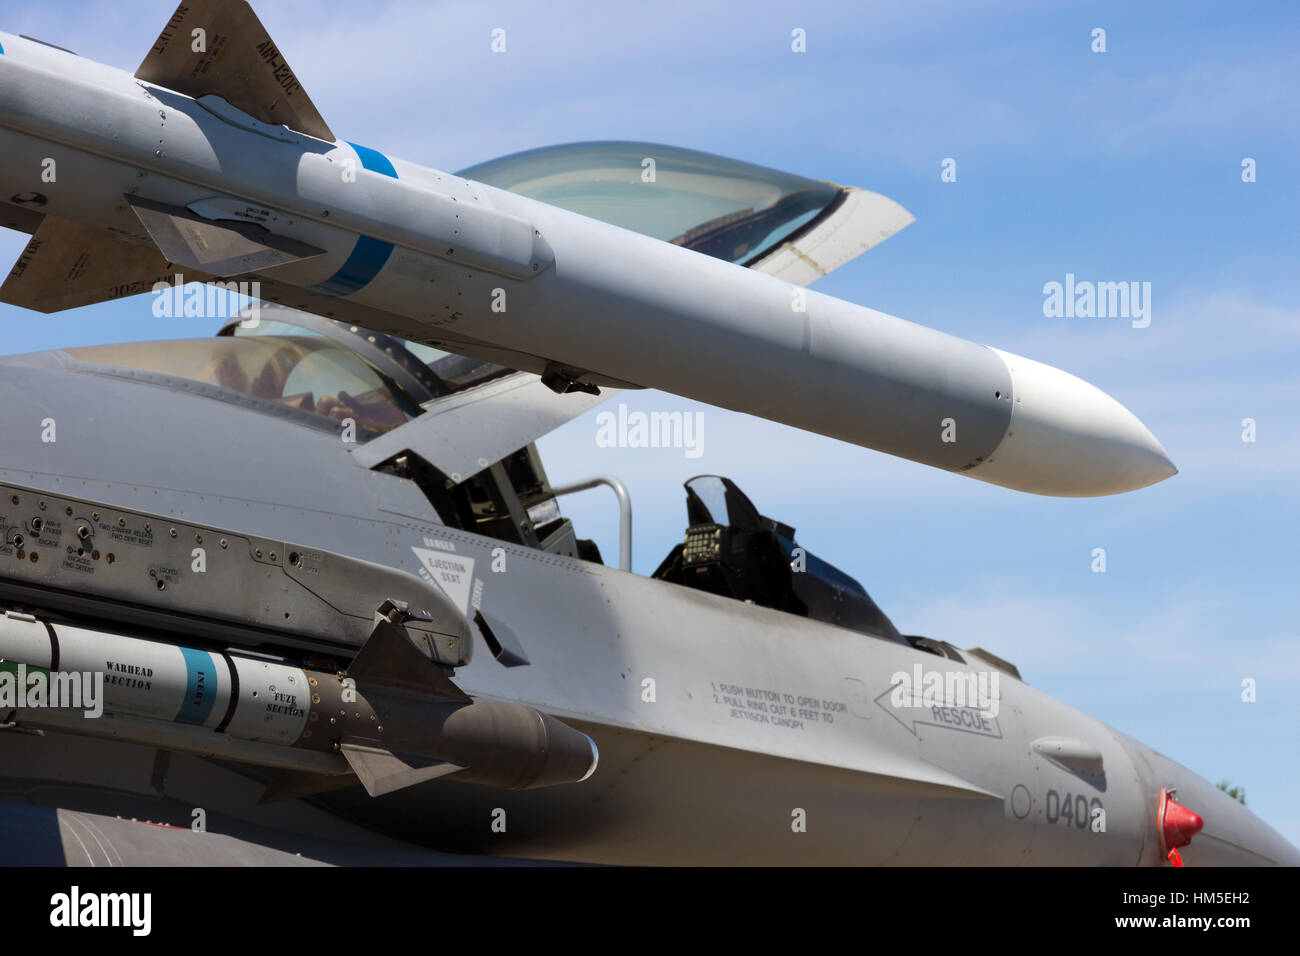 Berlino, Germania - 21 Maggio: missili su un US Air Force F-16 jet da combattimento presso il salone aerospaziale internazionale ILA su maggio 21st, 2014 a Berlino, germe Foto Stock